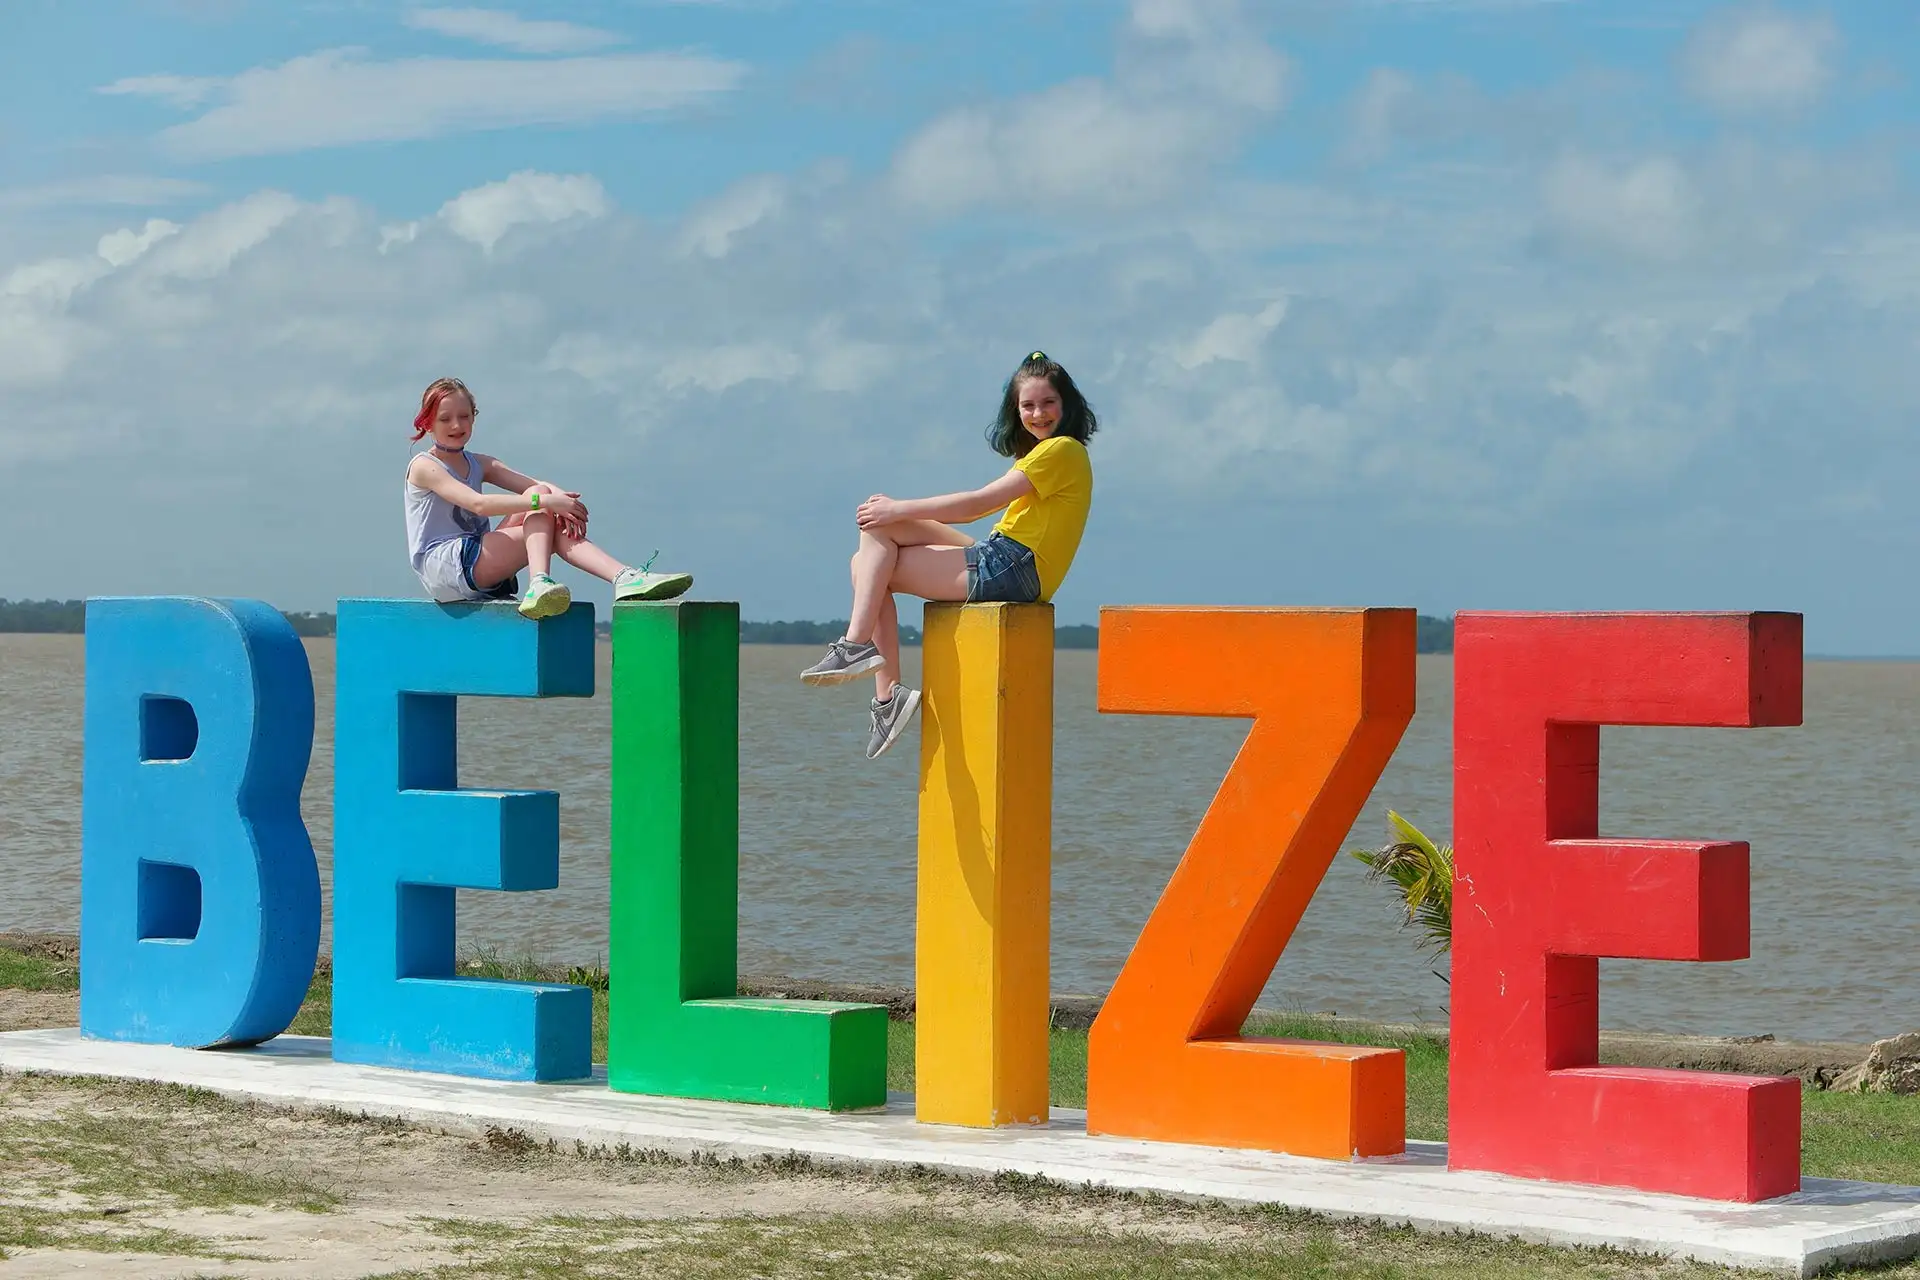 Belize; Photo Courtesy of Jeff Bogle/Family Vacation Critic